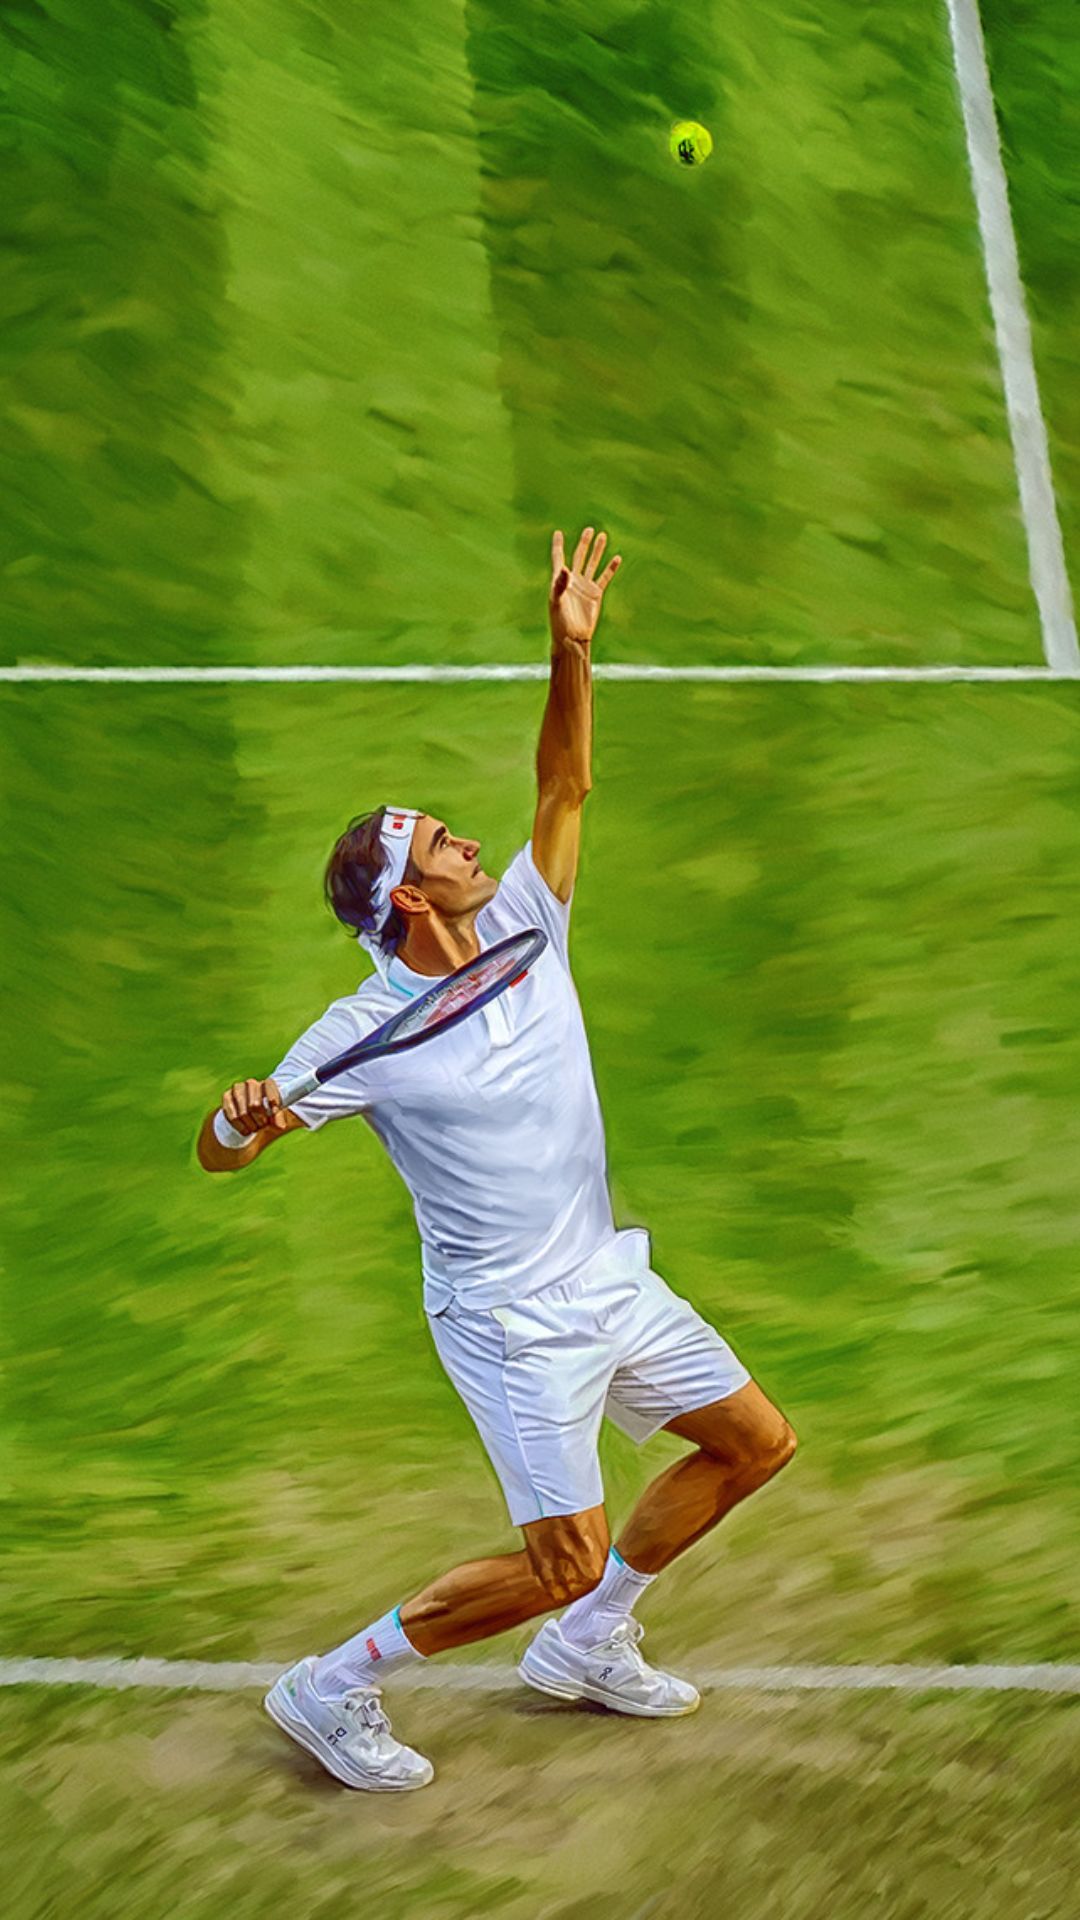 Roger Federer Wallpaper